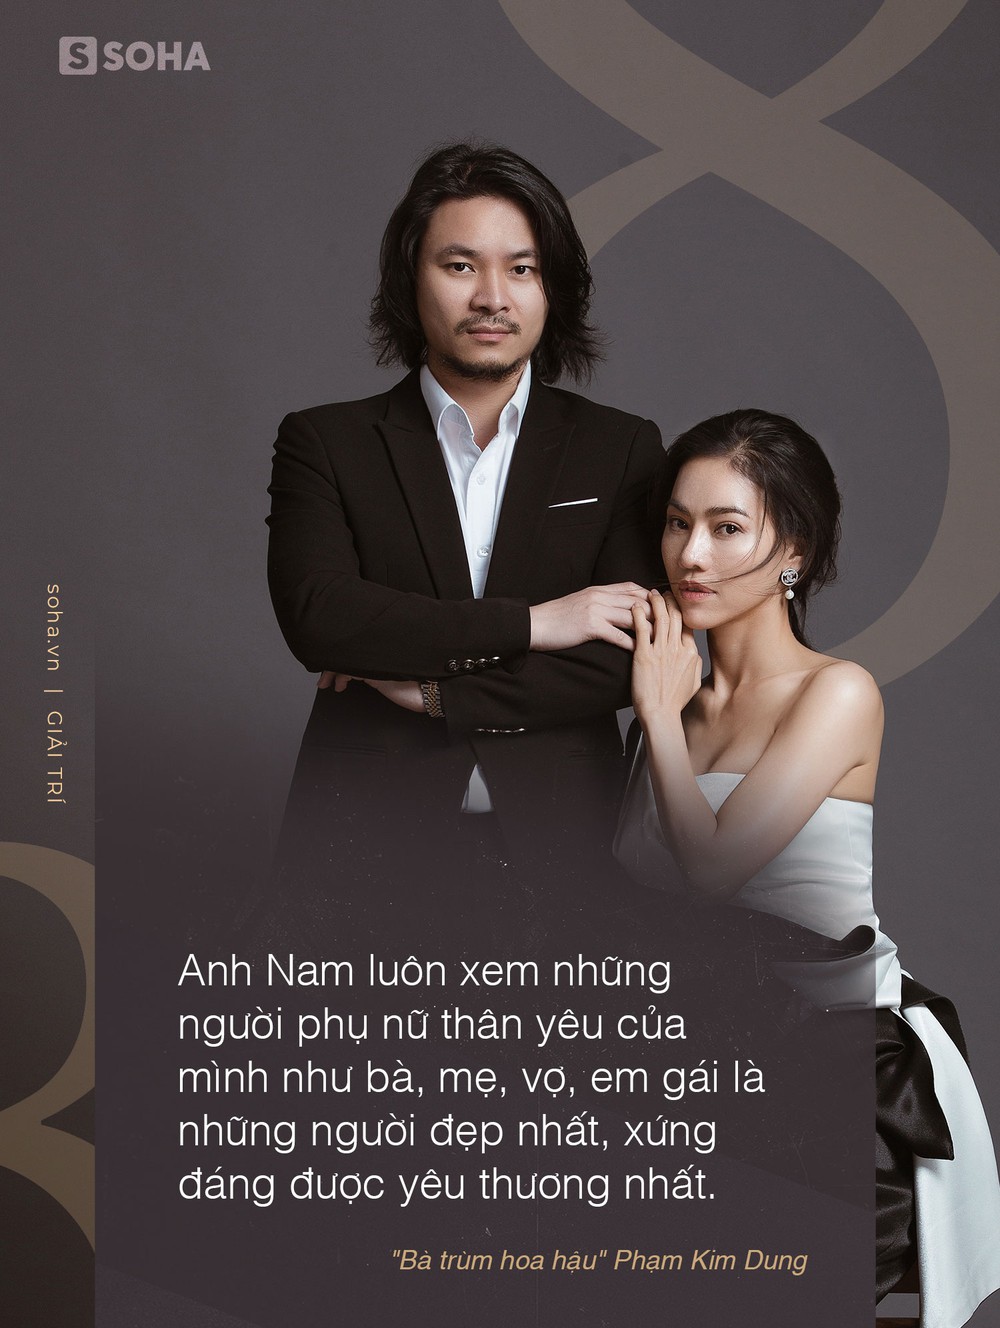 Bà trùm hoa hậu Phạm Kim Dung và những thỏa thuận hôn nhân với chồng đạo diễn - Ảnh 2.